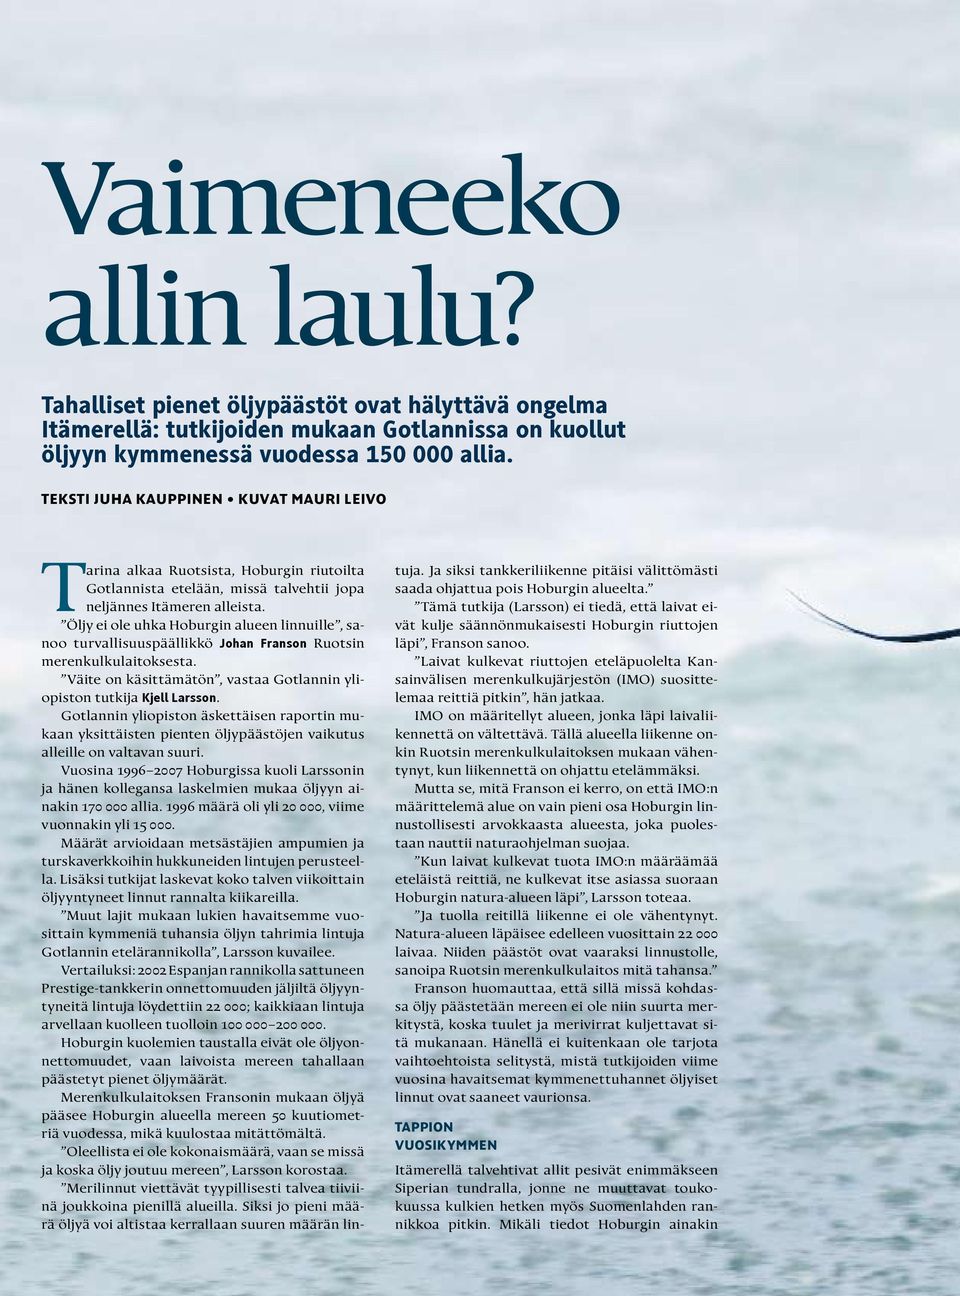 Öljy ei ole uhka Hoburgin alueen linnuille, sanoo turvallisuuspäällikkö Johan Franson Ruotsin merenkulkulaitoksesta. Väite on käsittämätön, vastaa Gotlannin yliopiston tutkija Kjell Larsson.